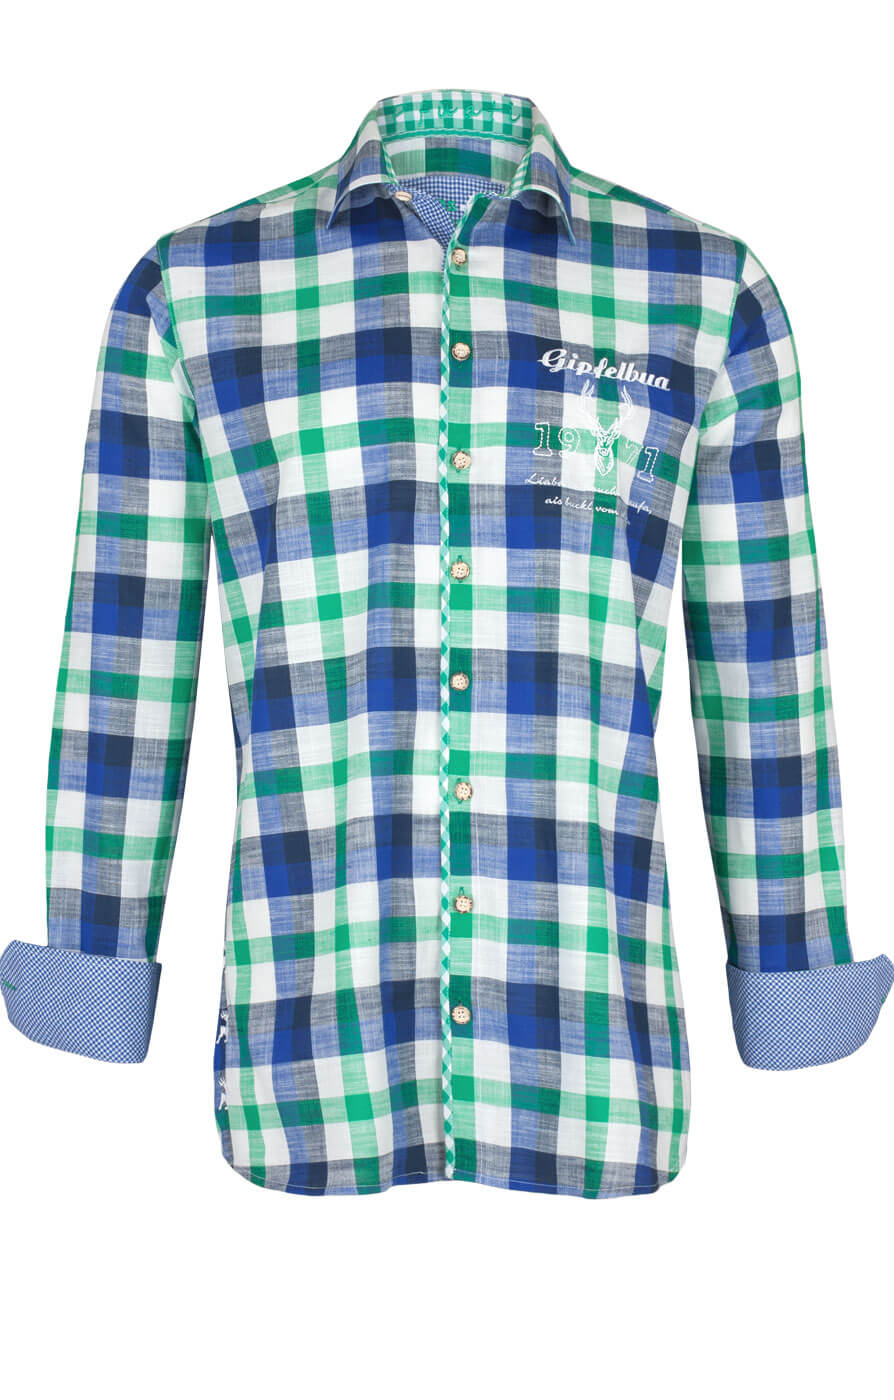 weitere Bilder von German traditional shirt 920001-3259-564 green blue